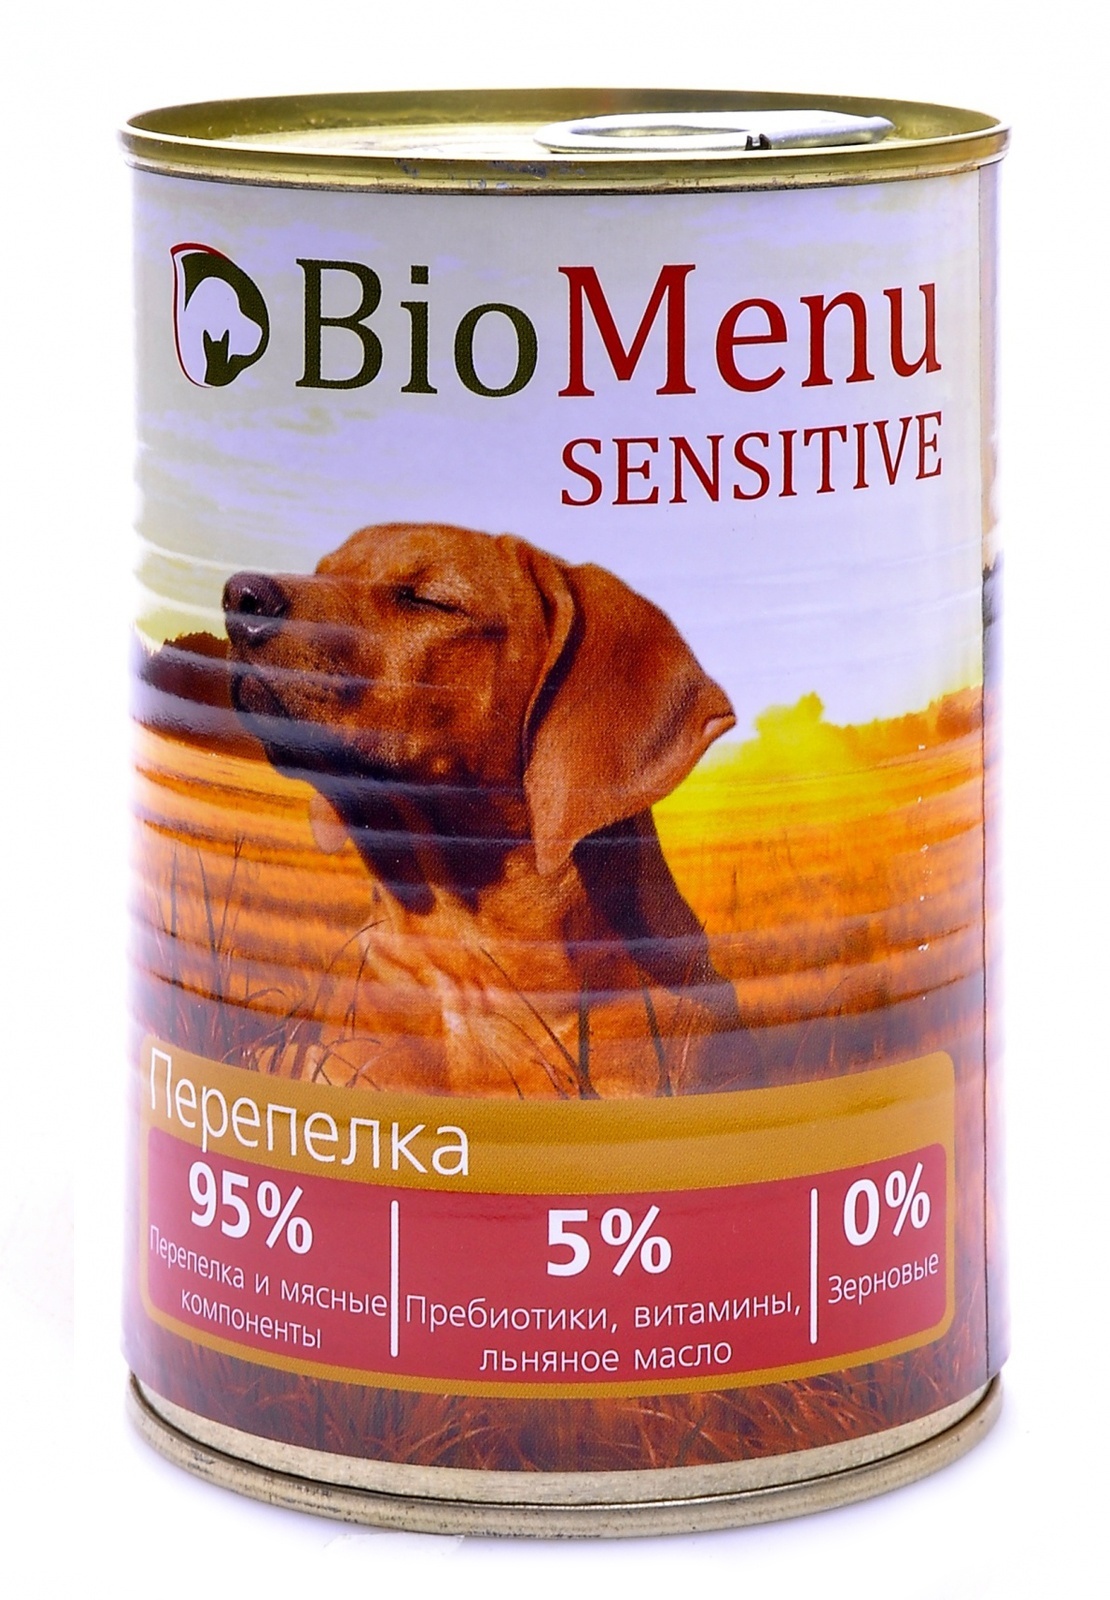 BioMenu BioMenu гипоаллергенные консервы для собак перепелка (410 г) biomenu biomenu консервы для собак цыпленок с ананасом 100 г